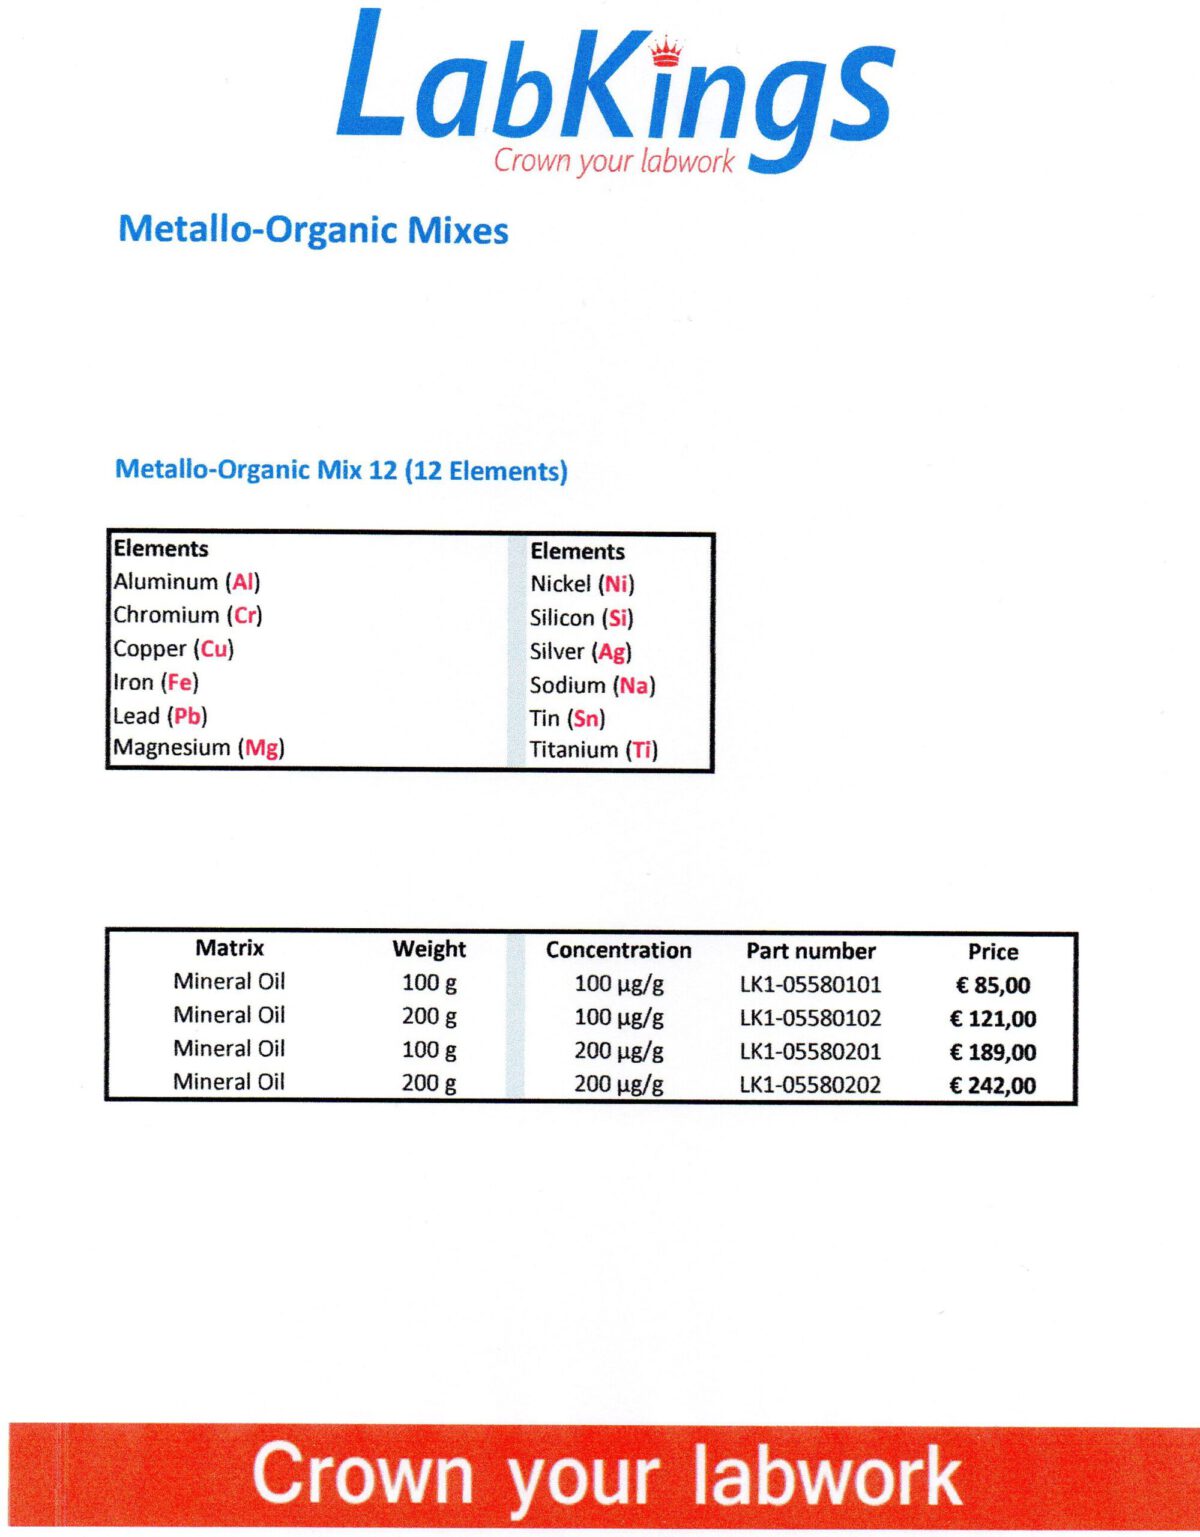 Metallo-Organic Mix 12, 100 ug/g, 200g